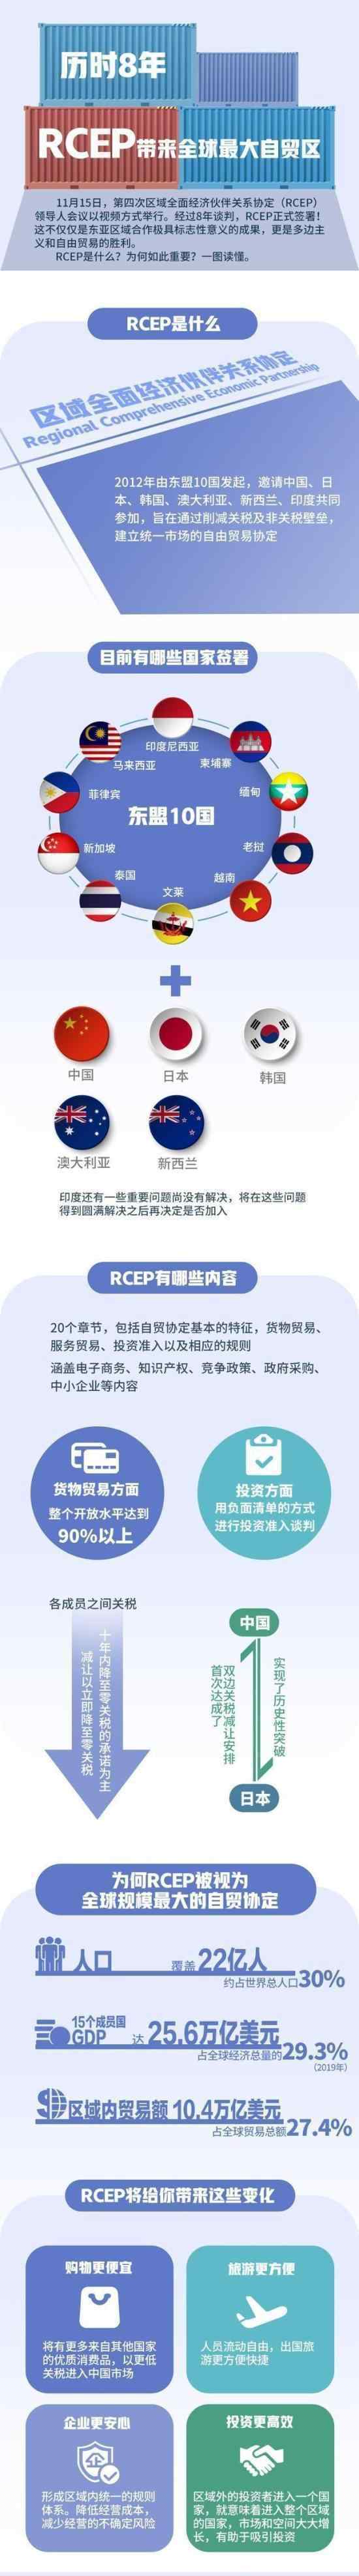 15国正式签署RCEP 什么是RCEP?具体什么情况?